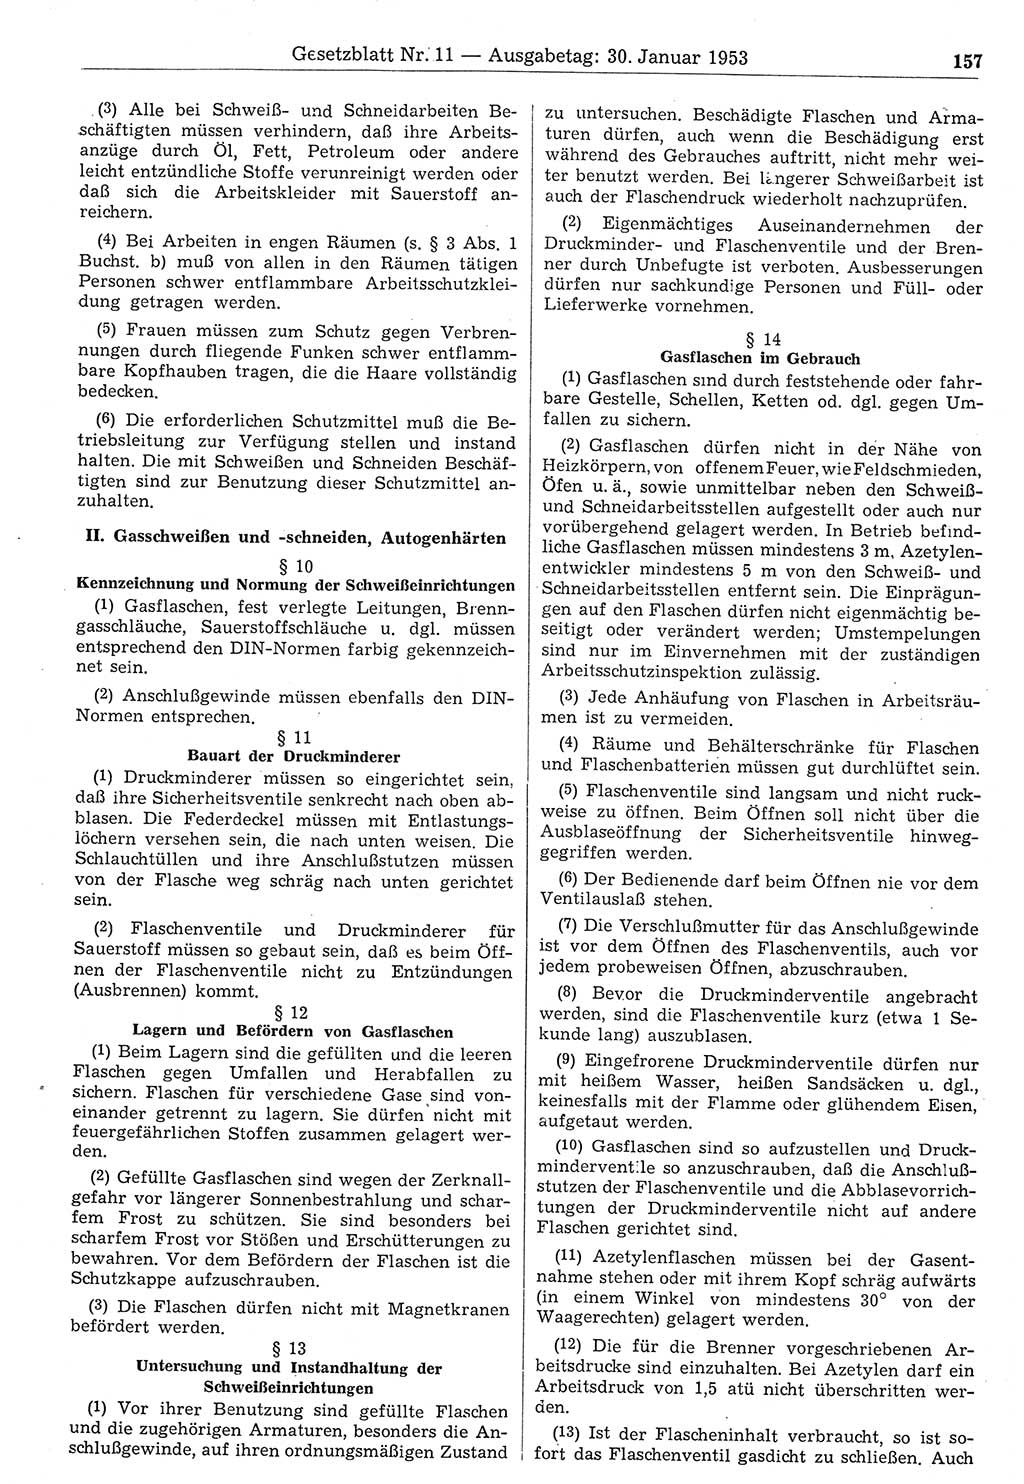 Gesetzblatt (GBl.) der Deutschen Demokratischen Republik (DDR) 1953, Seite 157 (GBl. DDR 1953, S. 157)